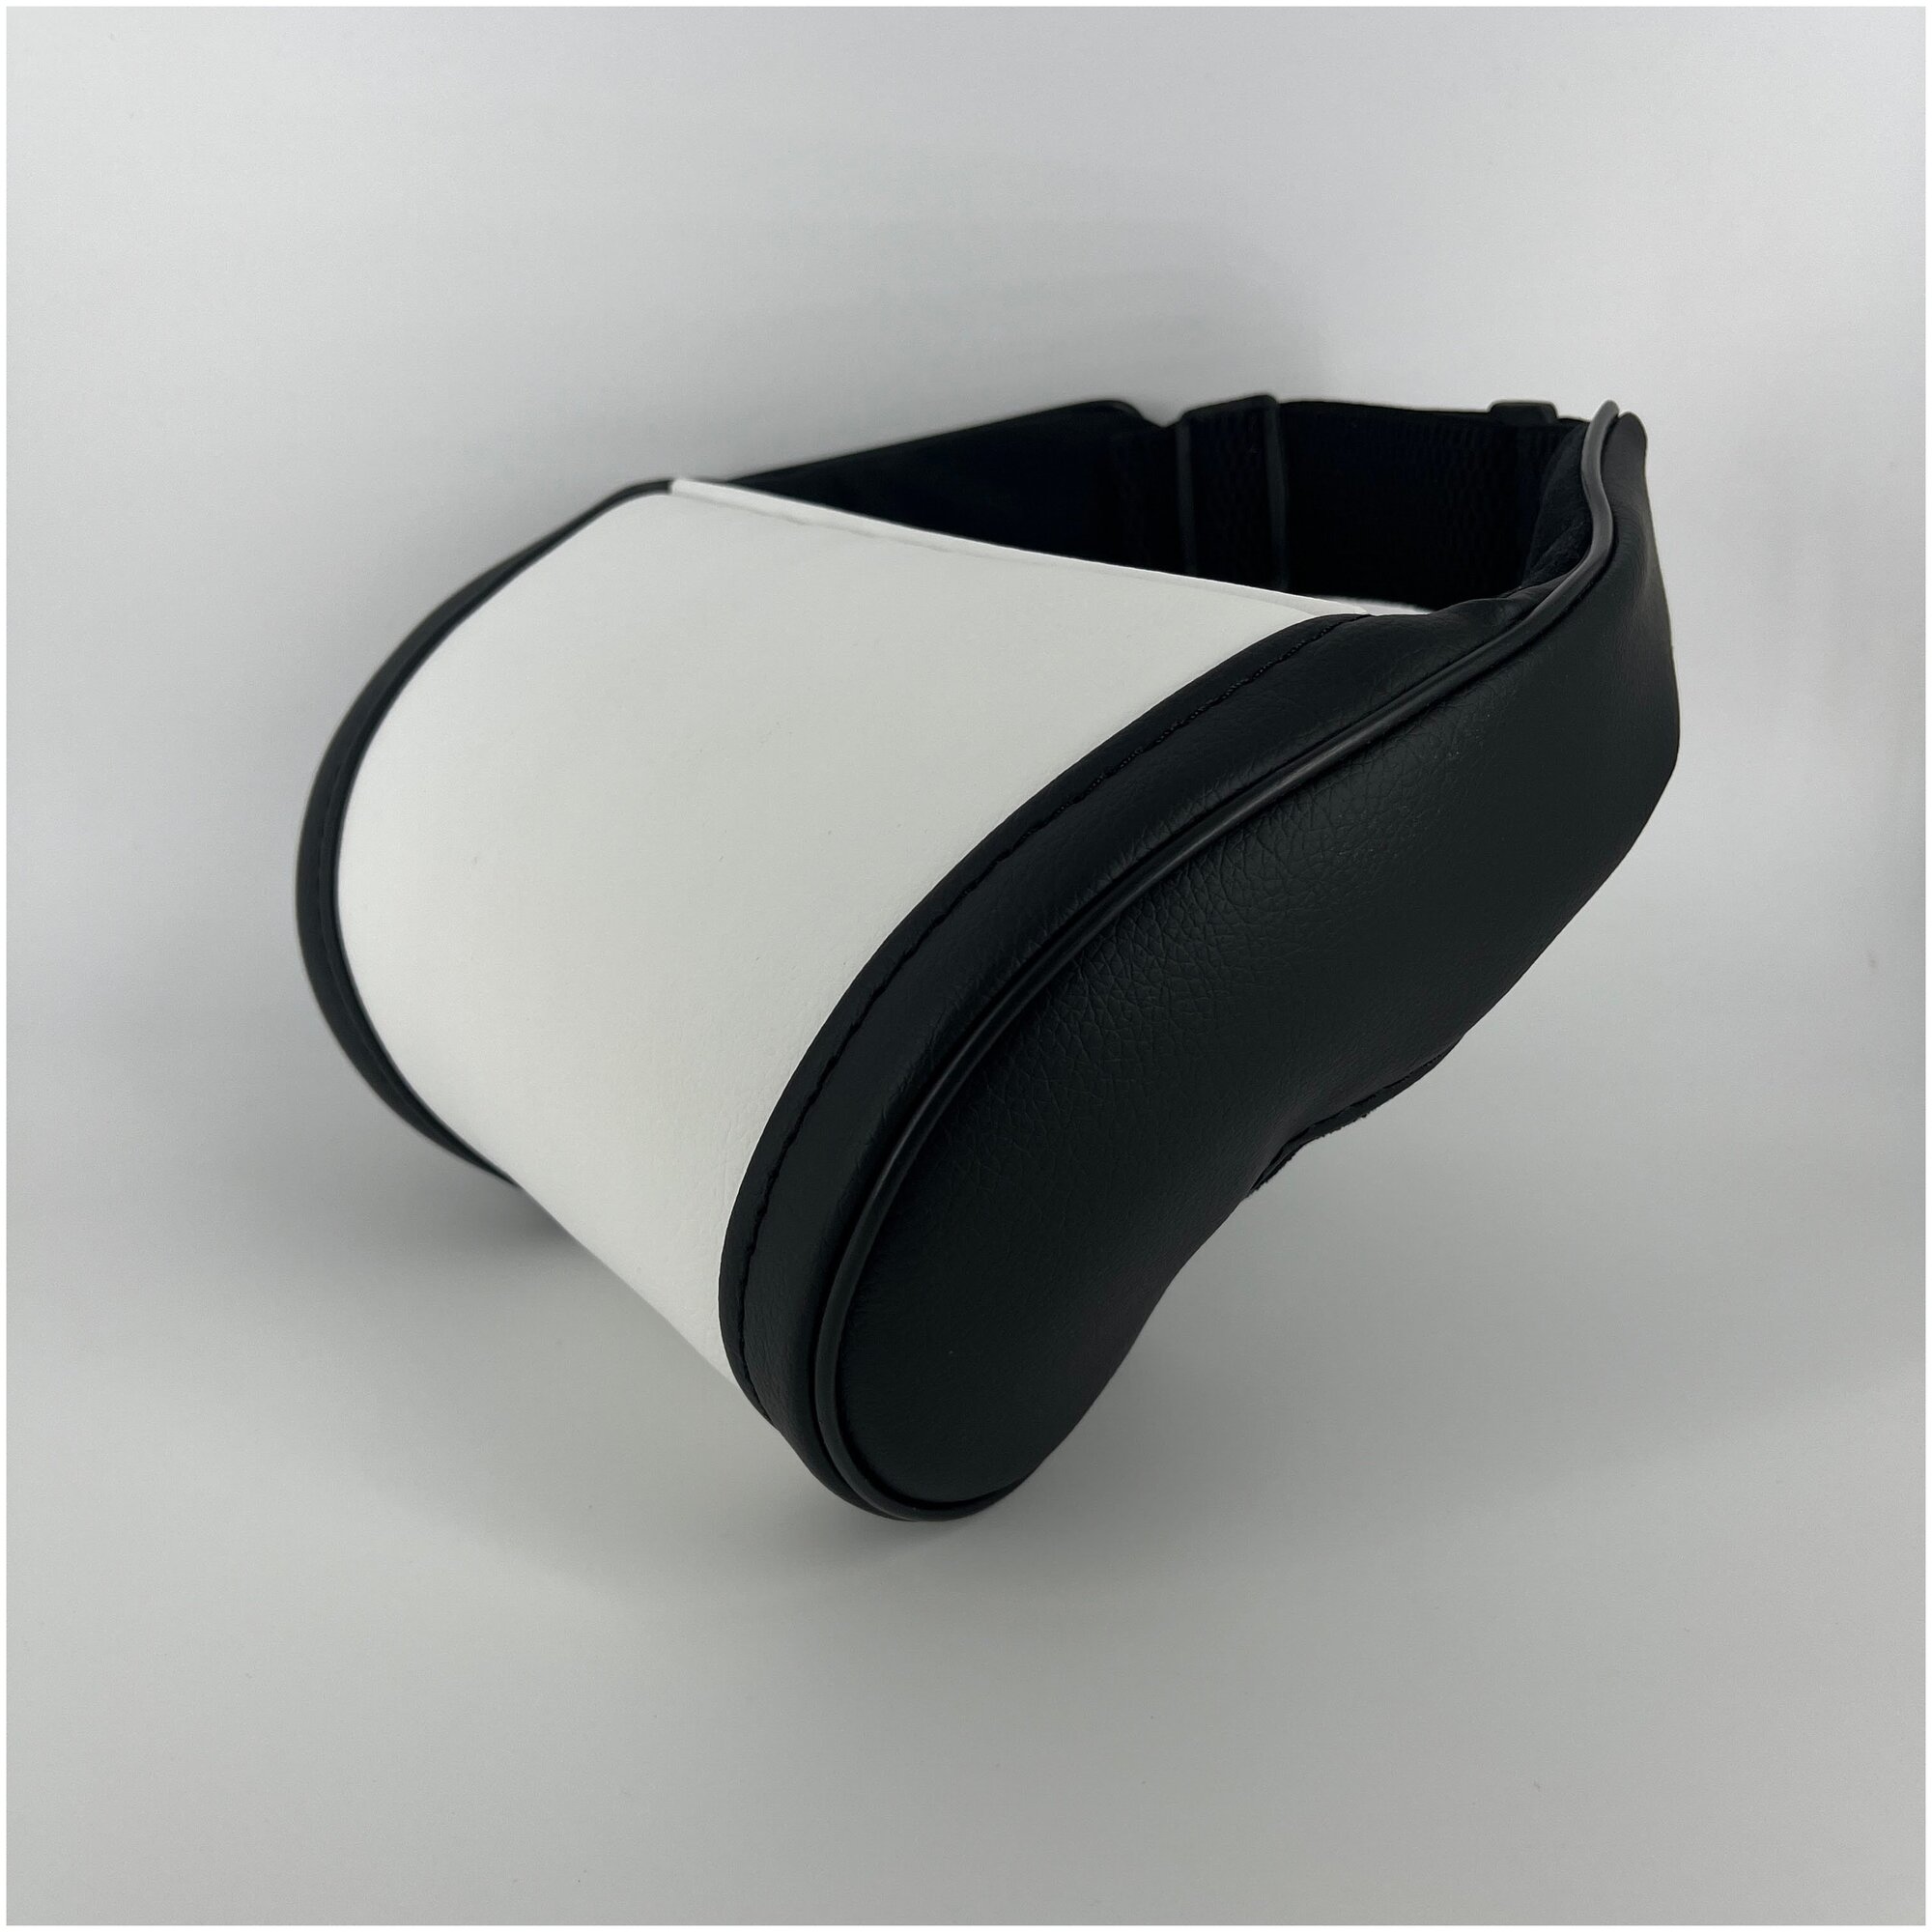 Белая автомобильная ортопедическая подушка для шеи на подголовник на сиденье с боками черного цвета. Экокожа премиум класса.